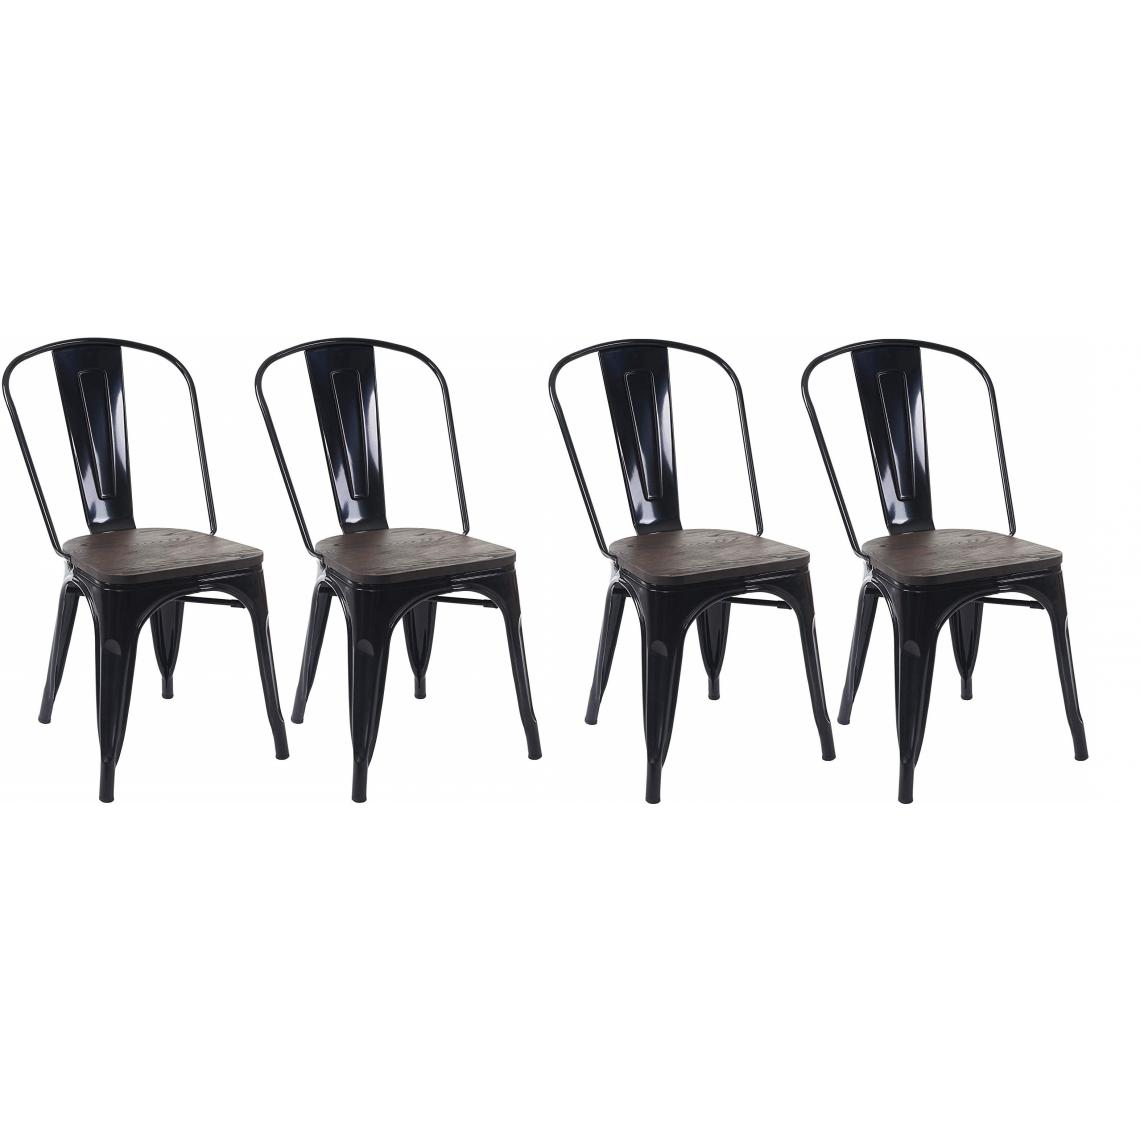 Decoshop26 - 4 chaises de salle à manger style industriel factory métal noir et assise en bois CDS04541 - Chaises